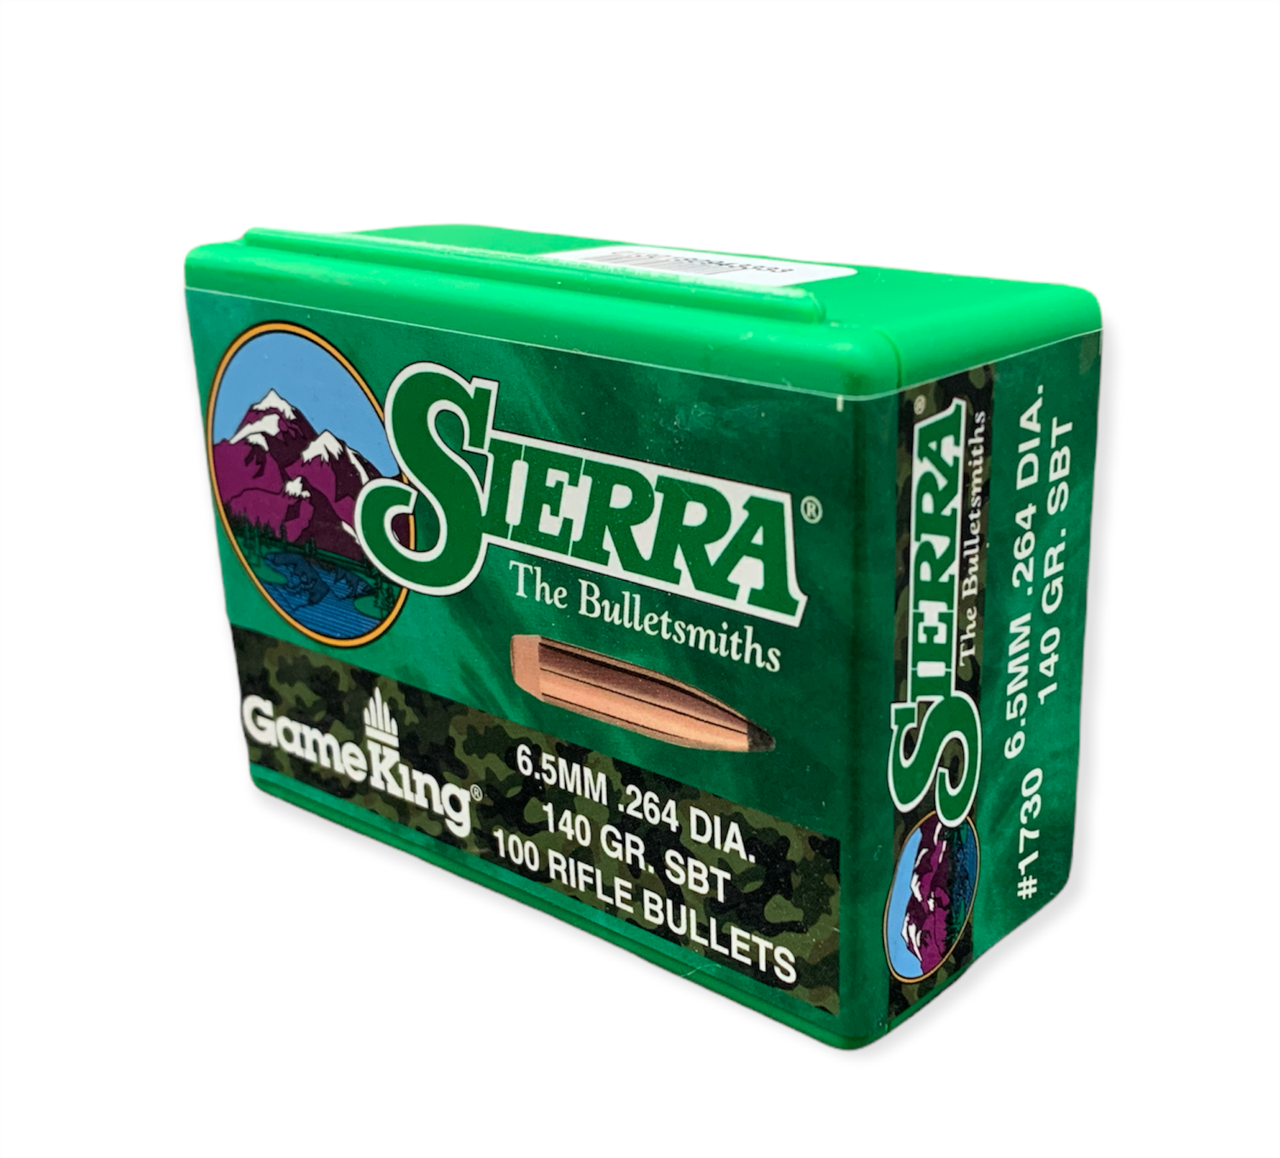 Buy Sierra Bullets 264 6 5mm x 140gr SBT Gameking 100 1730 Online